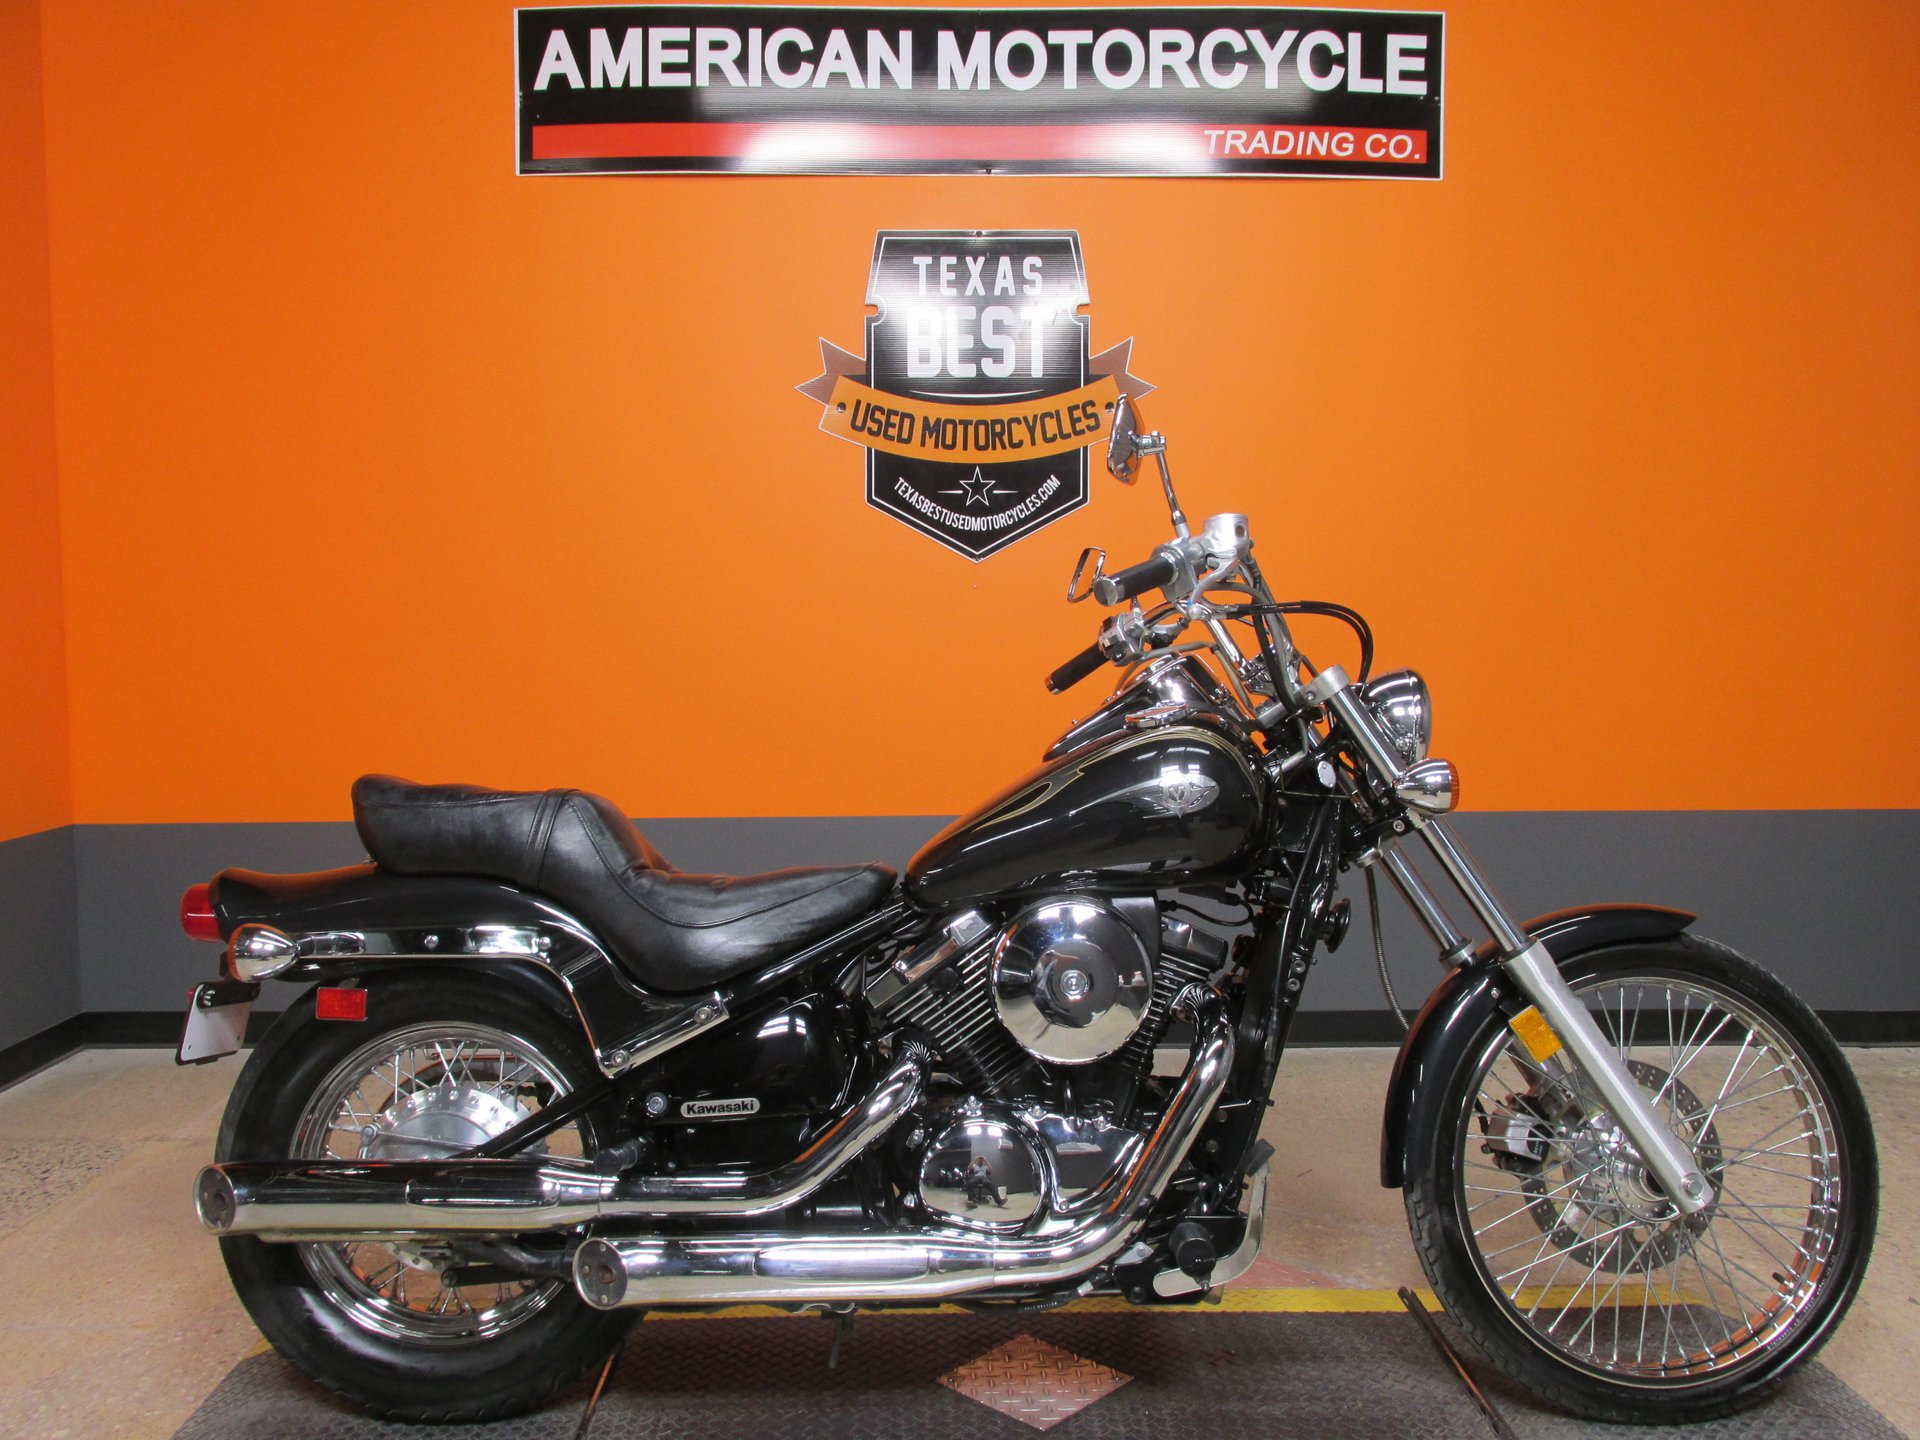 2003 Kawasaki Vulcan  American Motorcycle Trading Company - Used Harley  Davidson Motorcycles